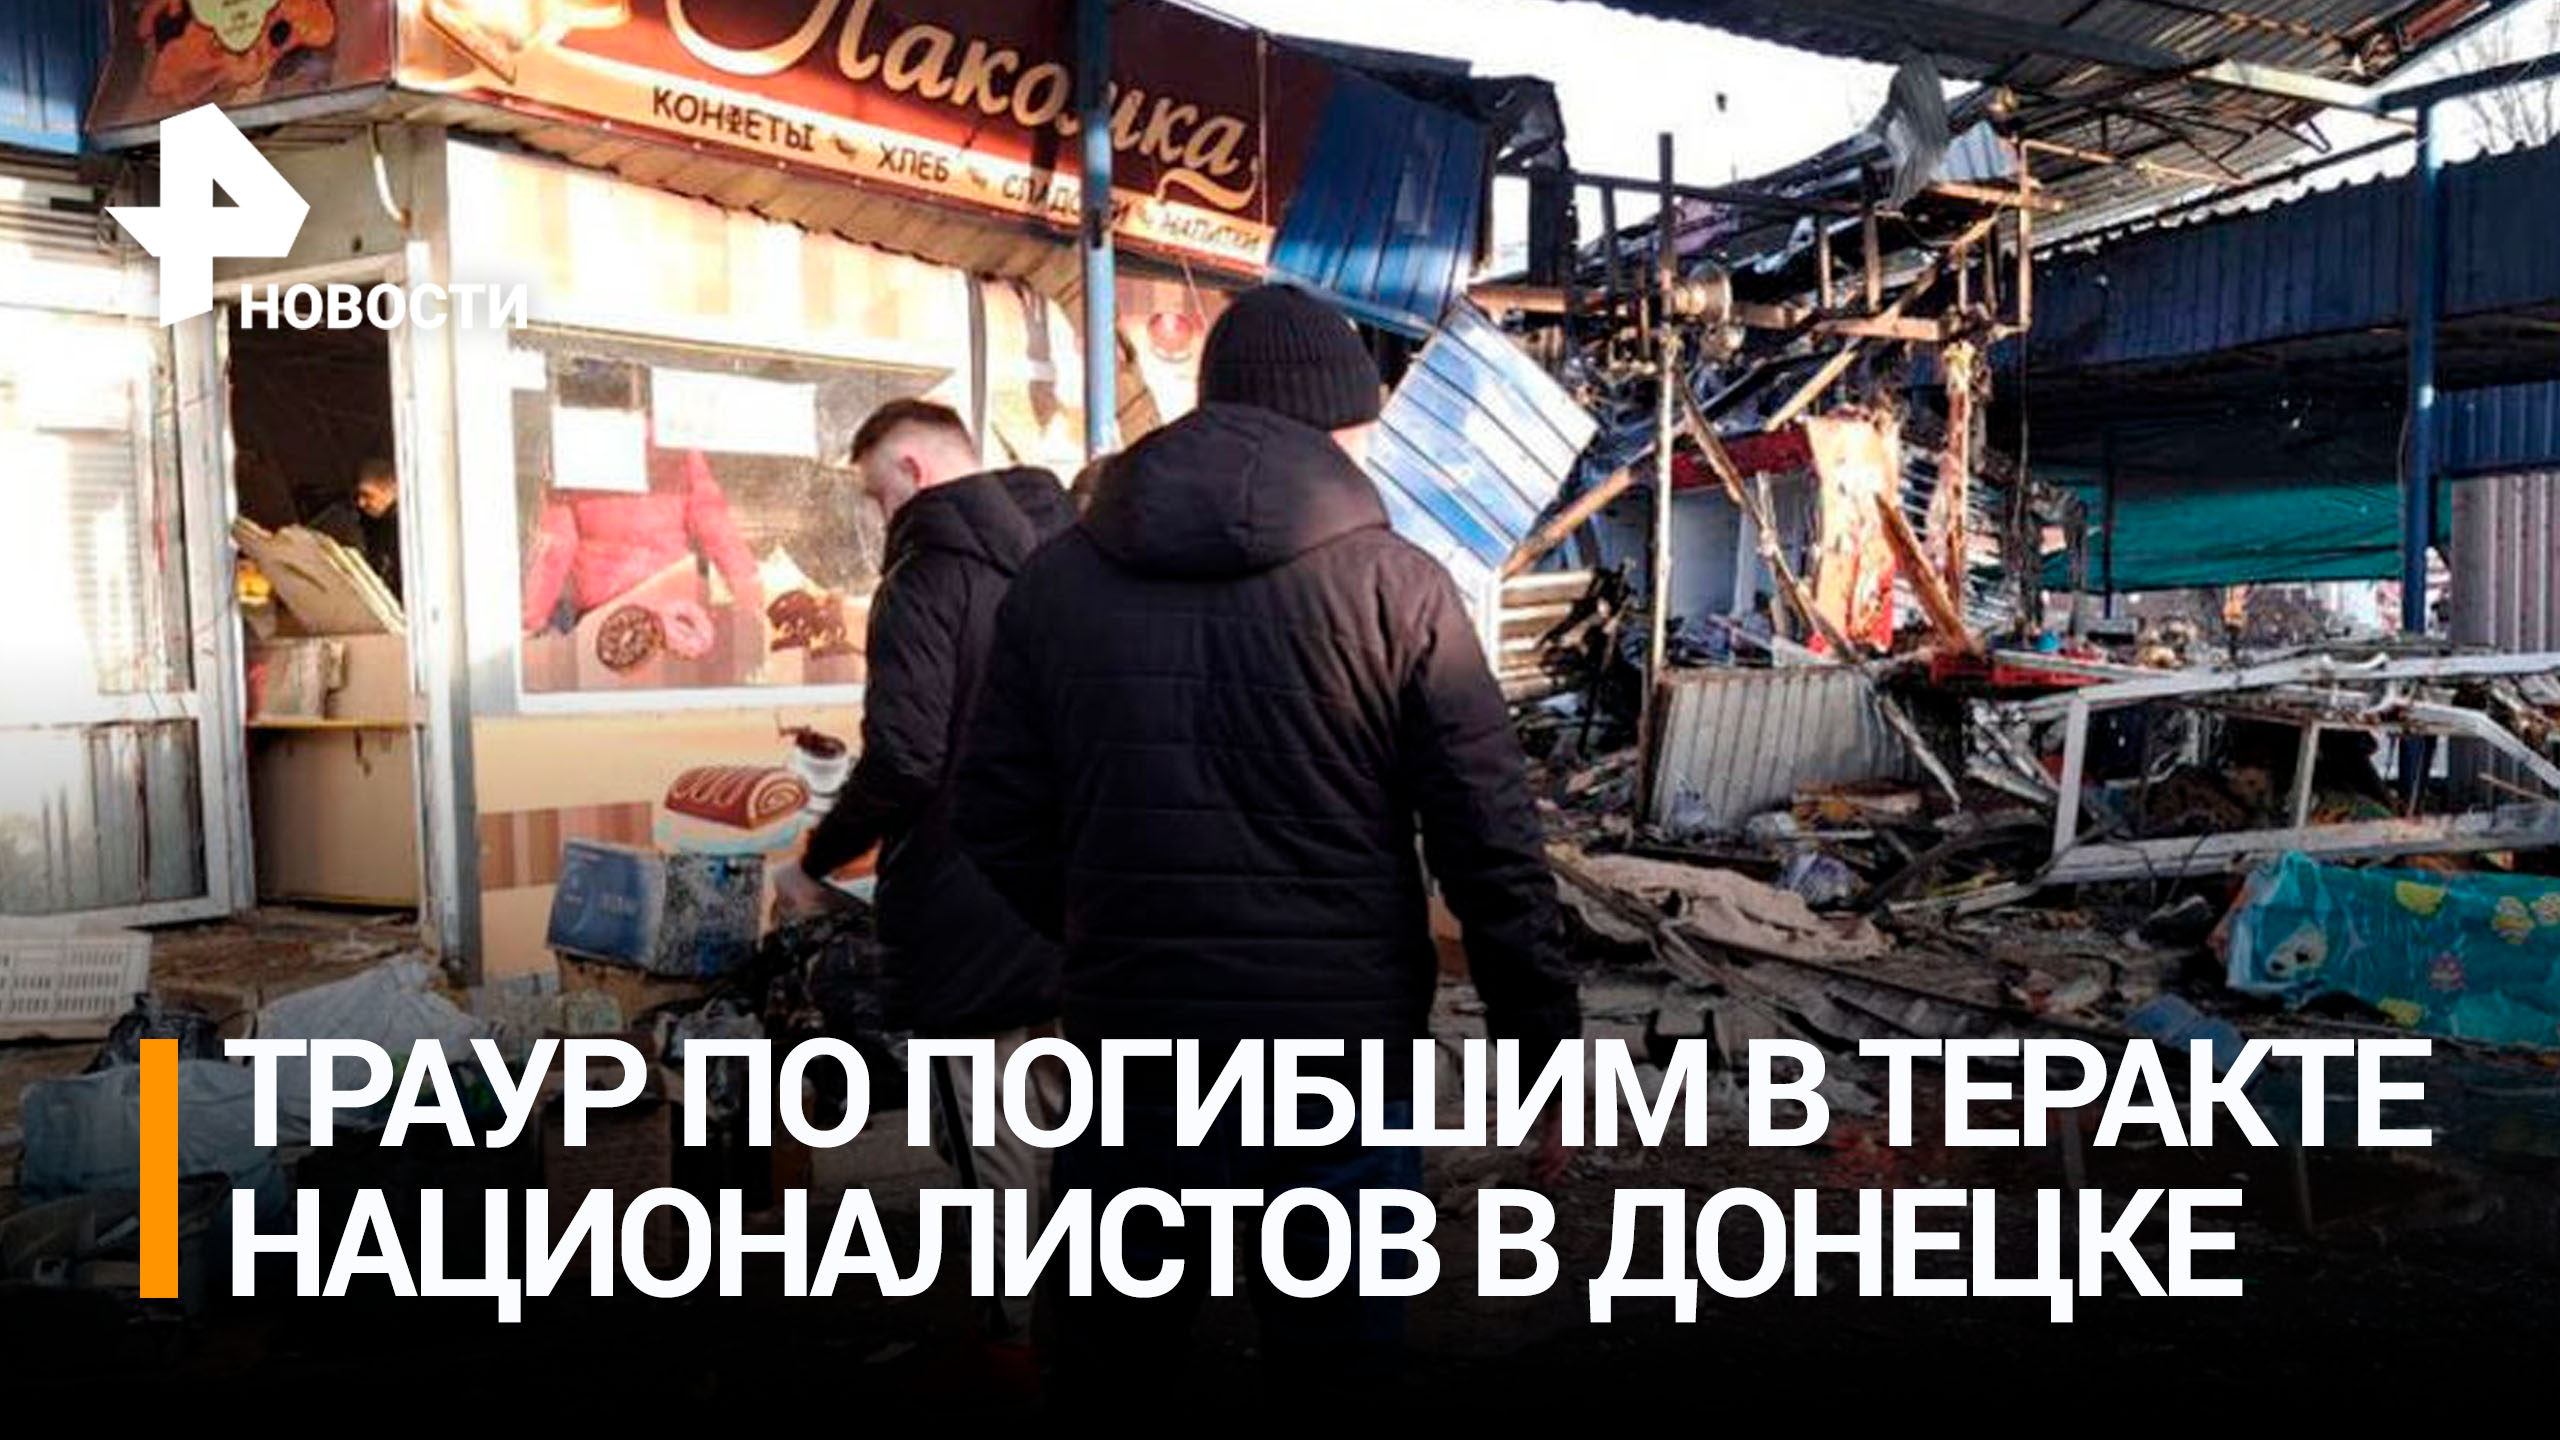 В Донецке день траура по 27 погибшим при атаке ВСУ на рынок / РЕН Новости